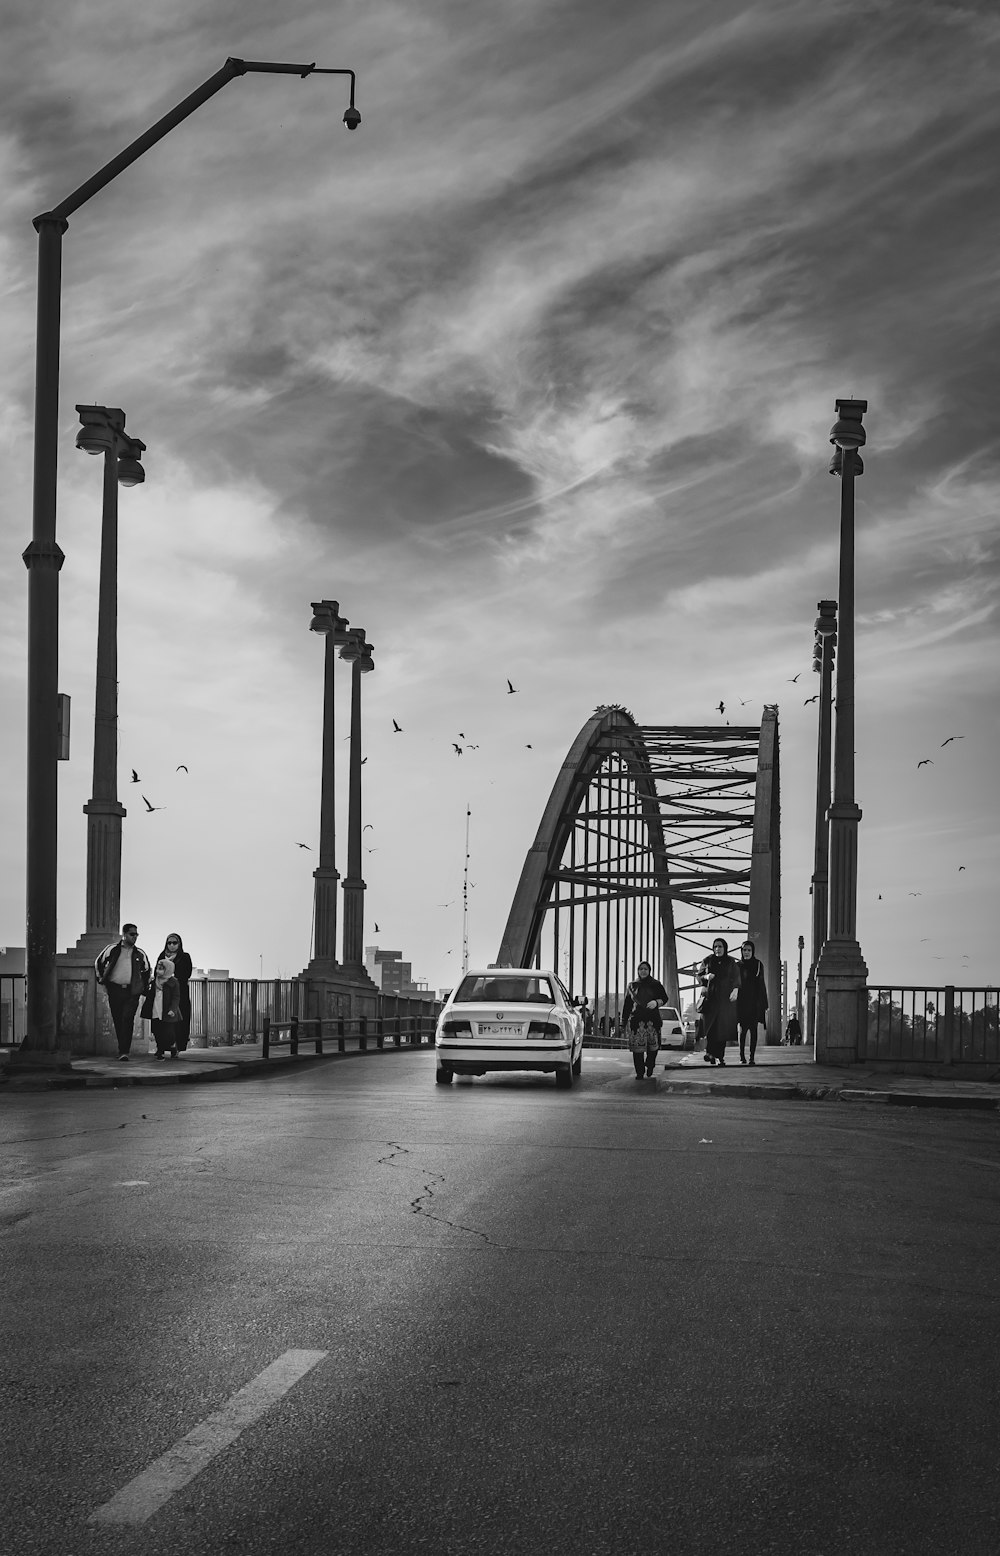 fotografia in scala di grigi del ponte con veicolo e persone che camminano